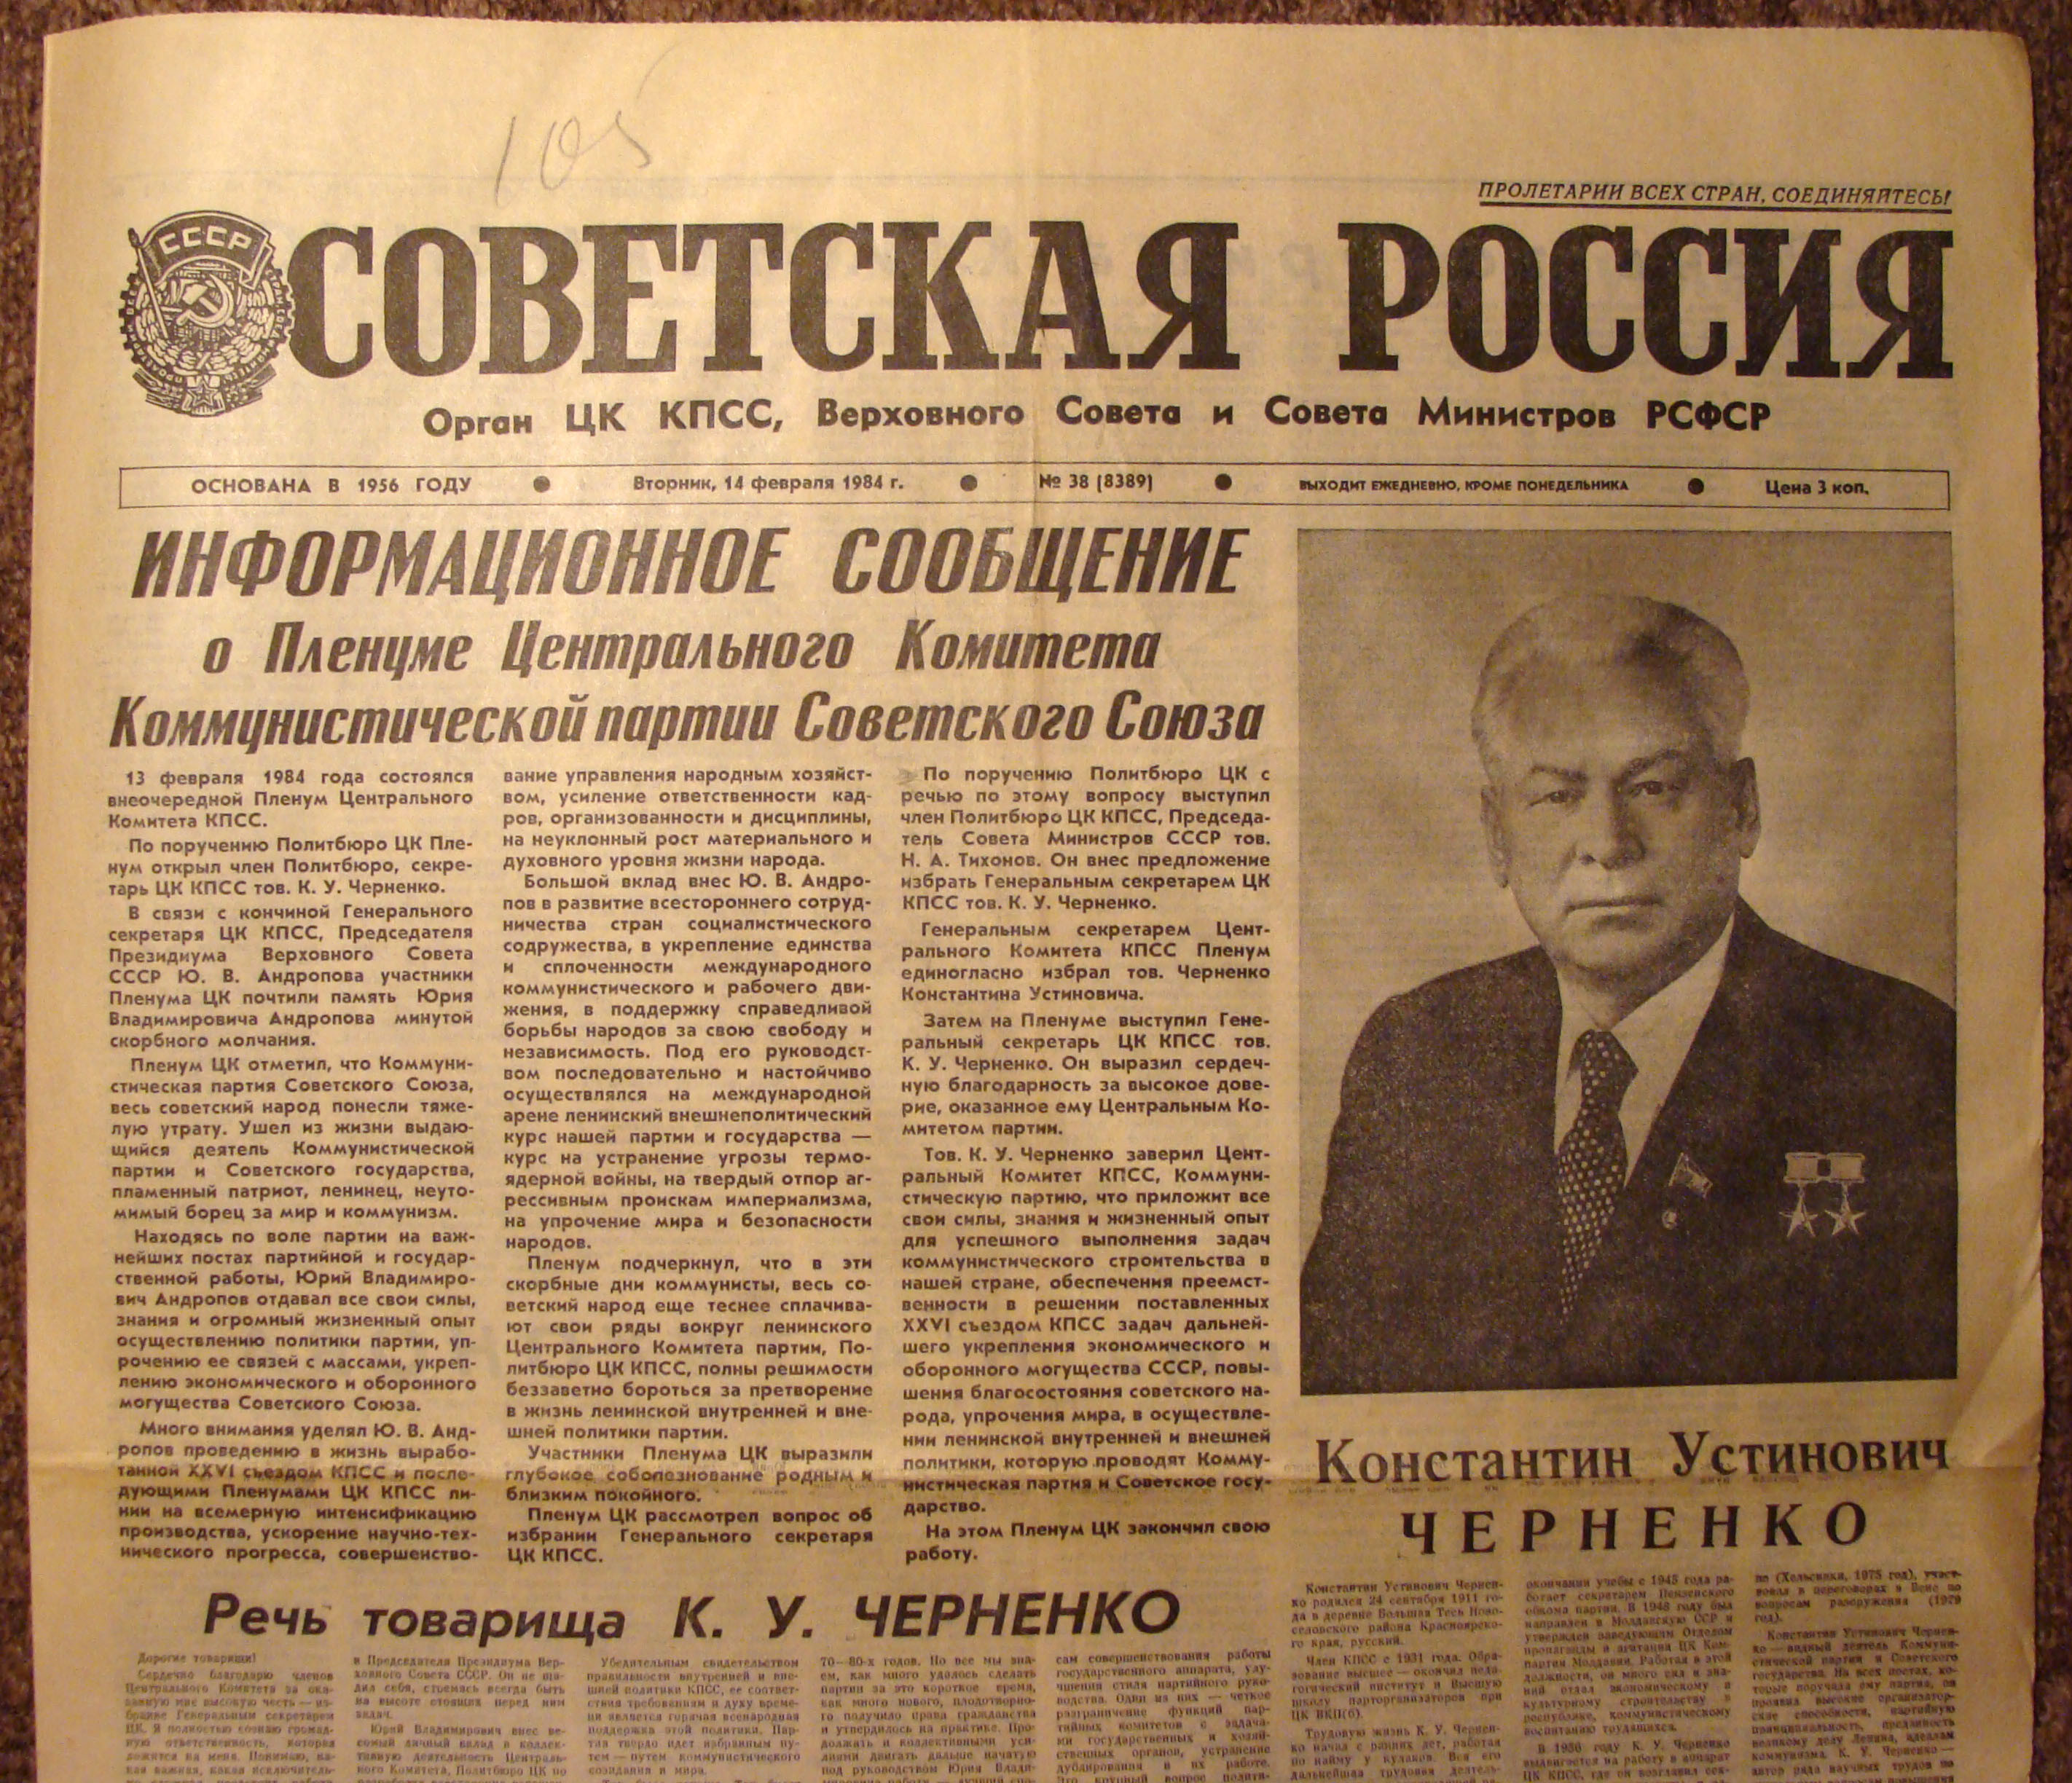 13 Февраля 1984 года на пленуме ЦК КПСС